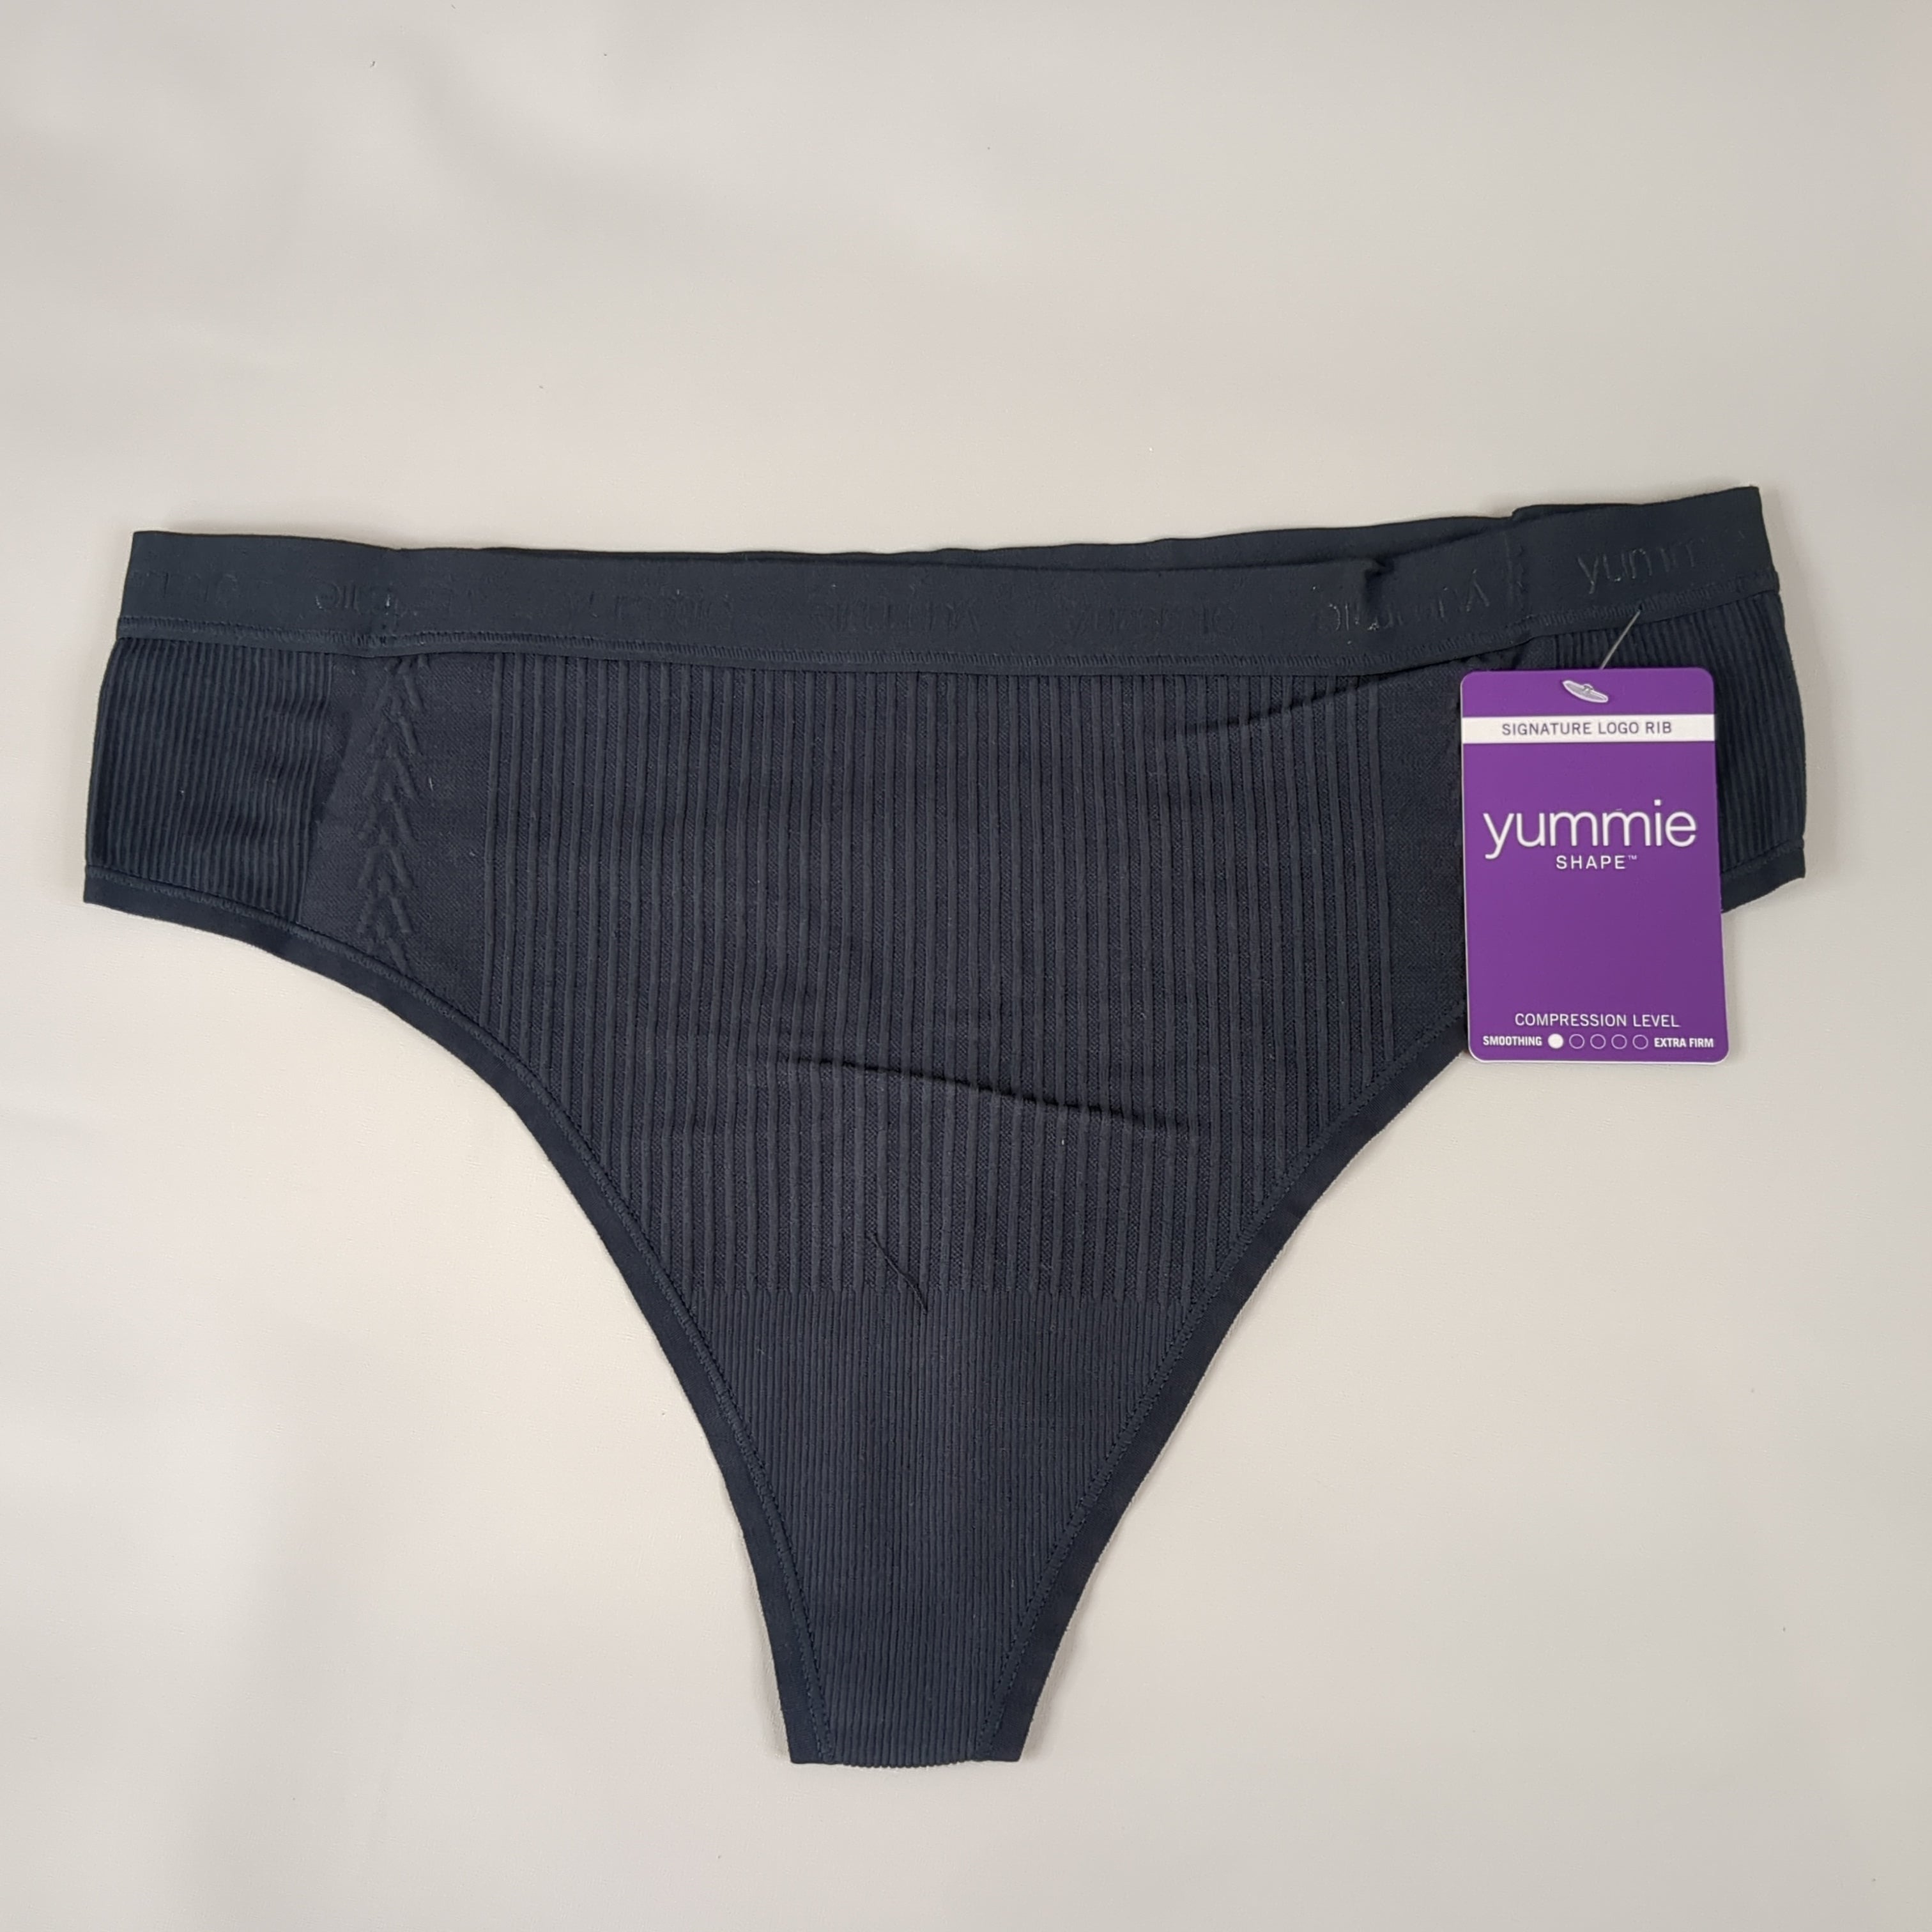 YUMMIE Eden Thong Women's Underwear Sz L/XL Black YT5-291 (New